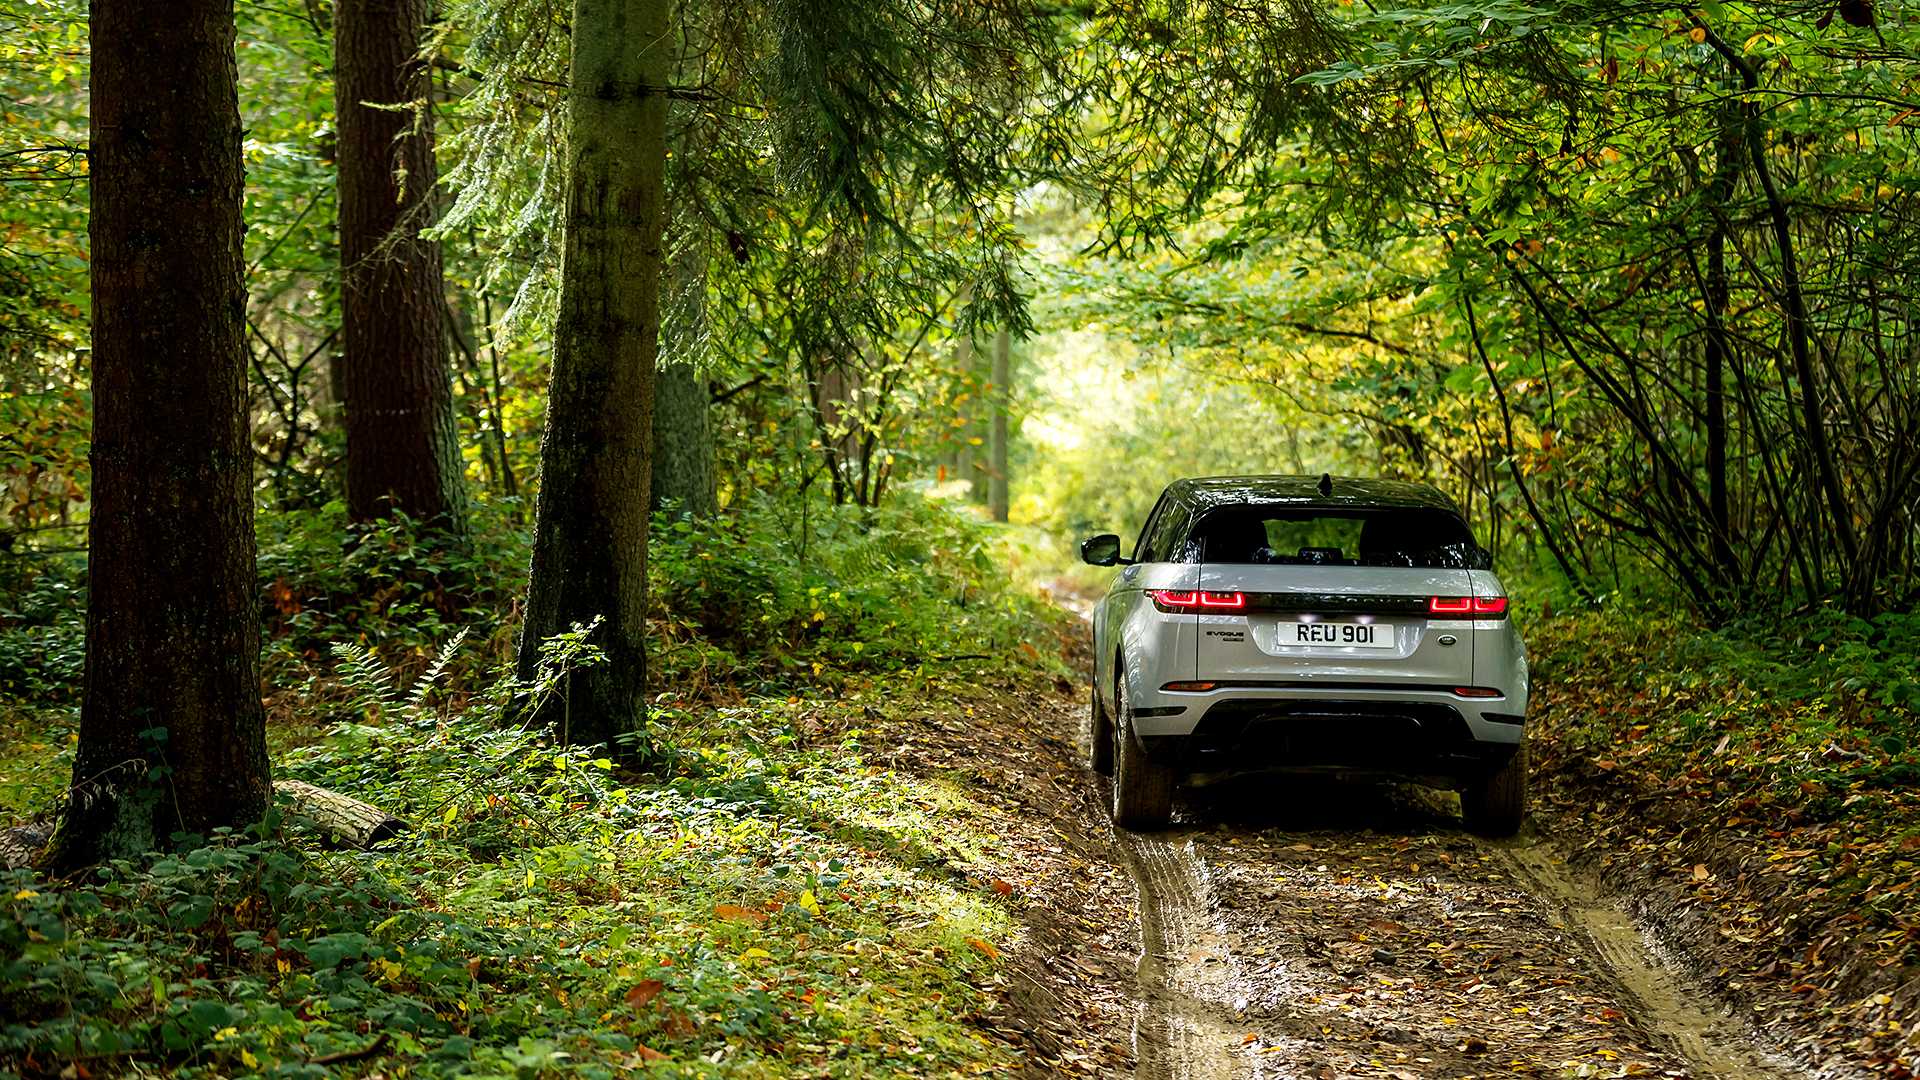 Oficial: nuevo Range Rover Evoque, información y fotos